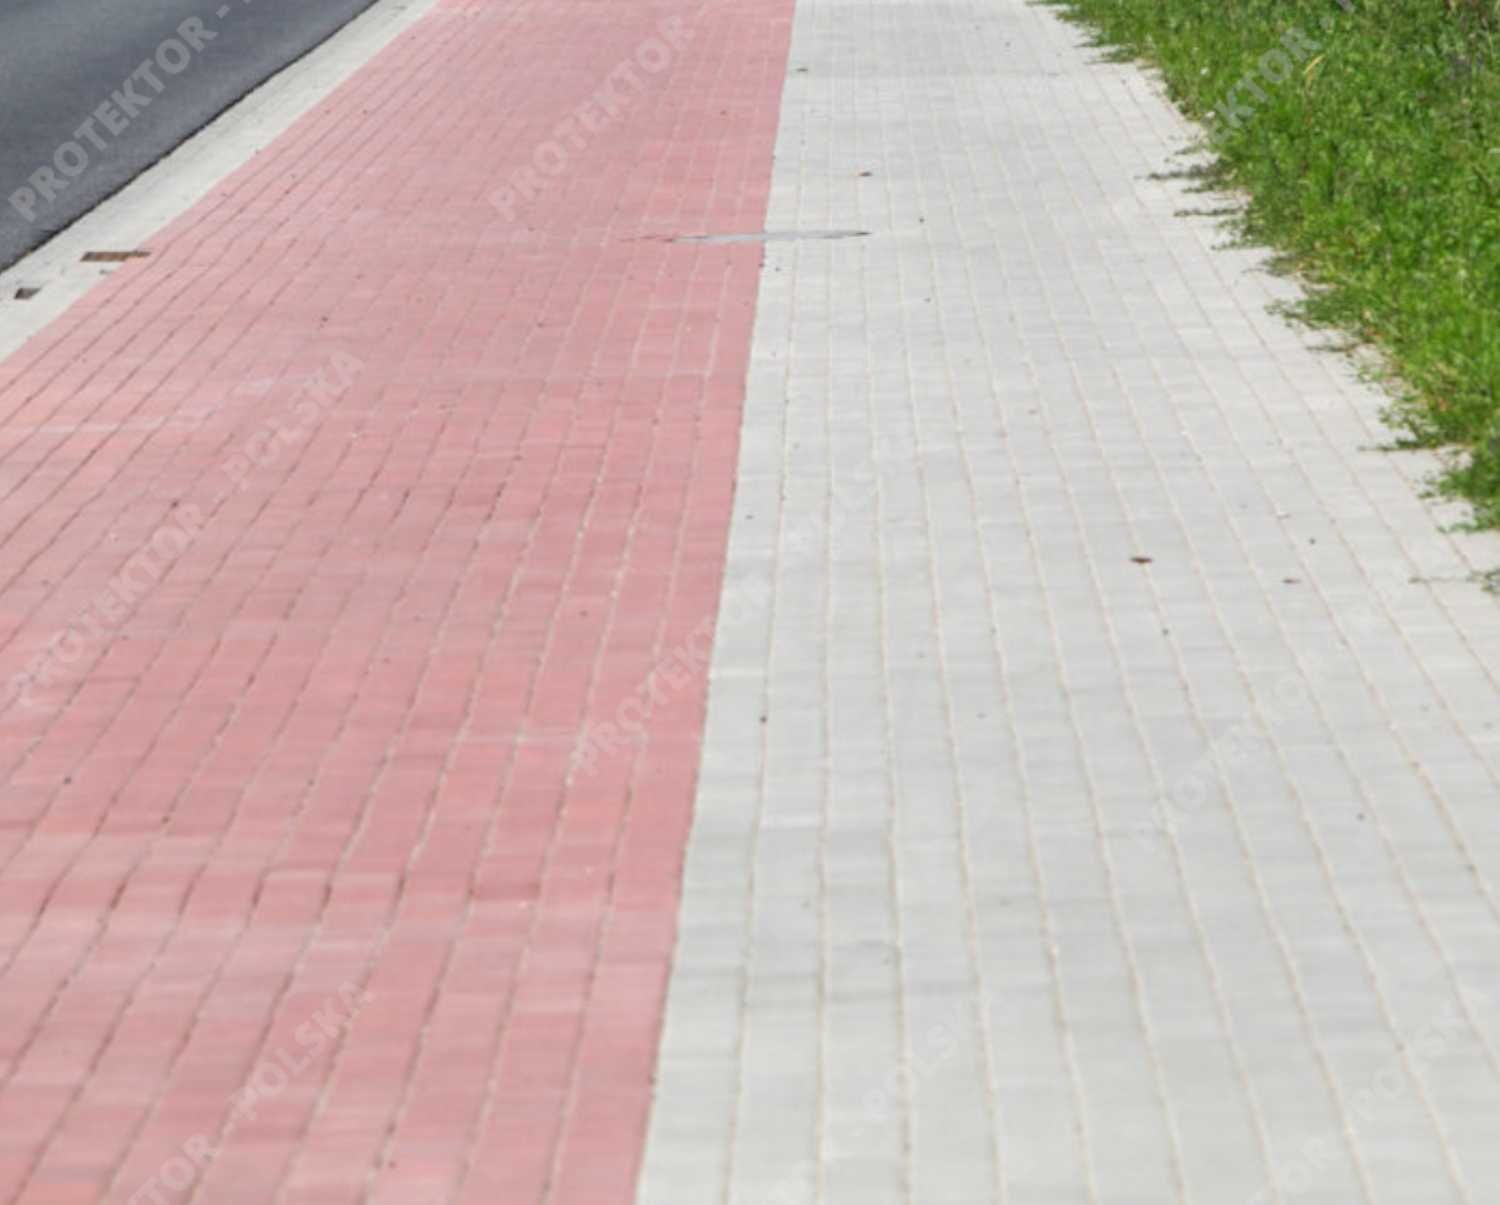 kostka brukowa HOLLAND Bruk chodnikowa betonowa płyta ścieżka podjazd